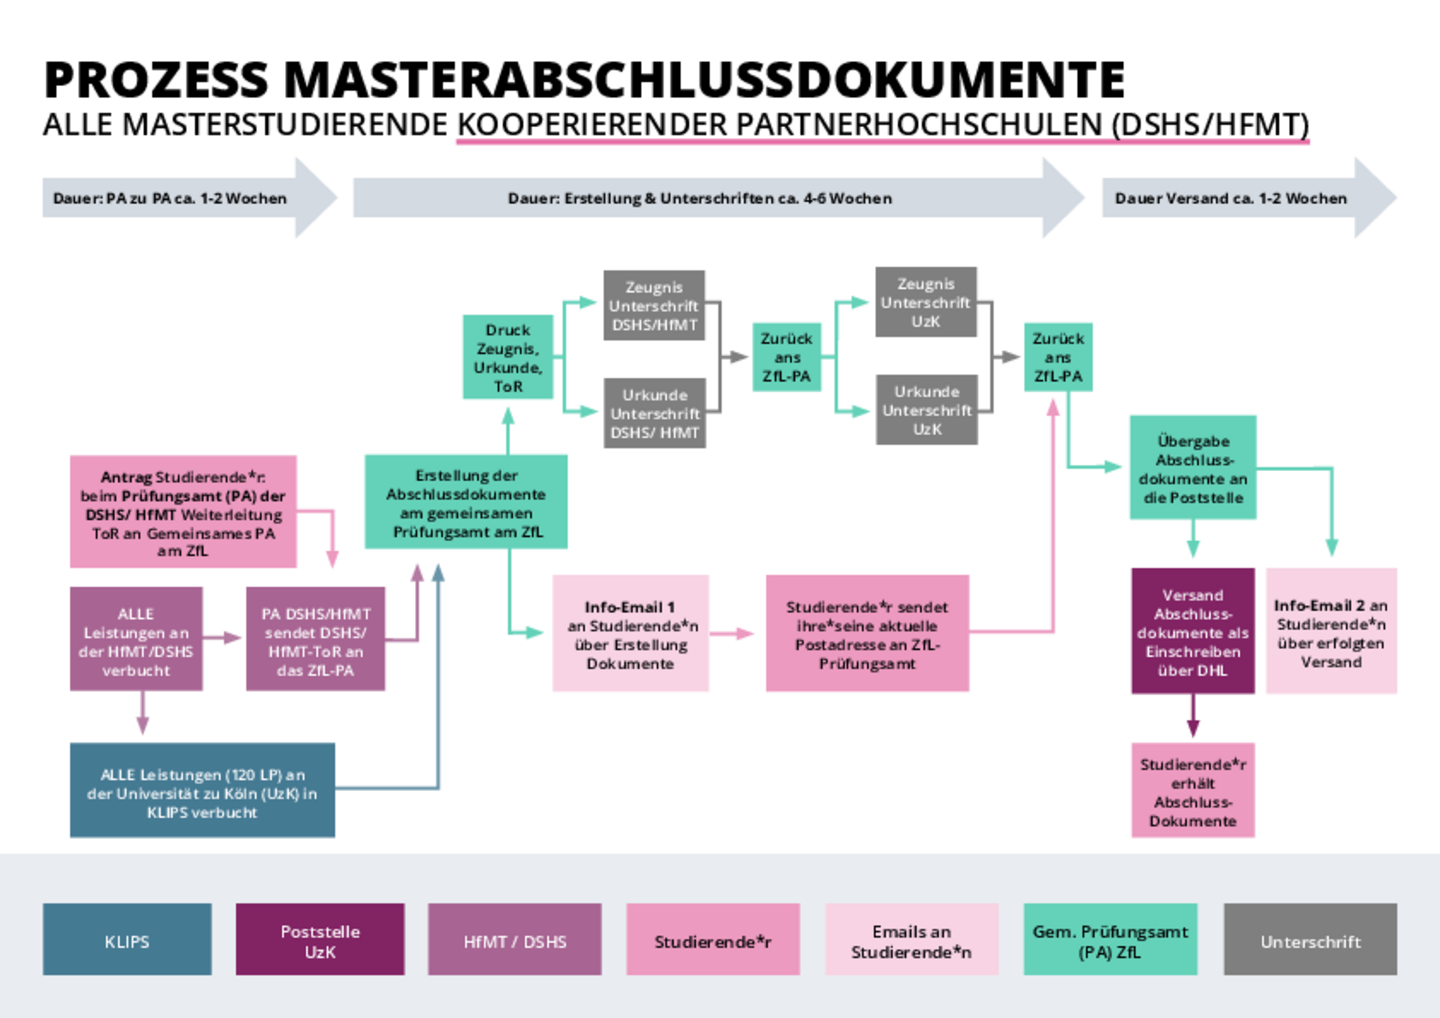 Grafik zum Prozess Masterabschlussdokumente mit kooperierenden Hochschulen